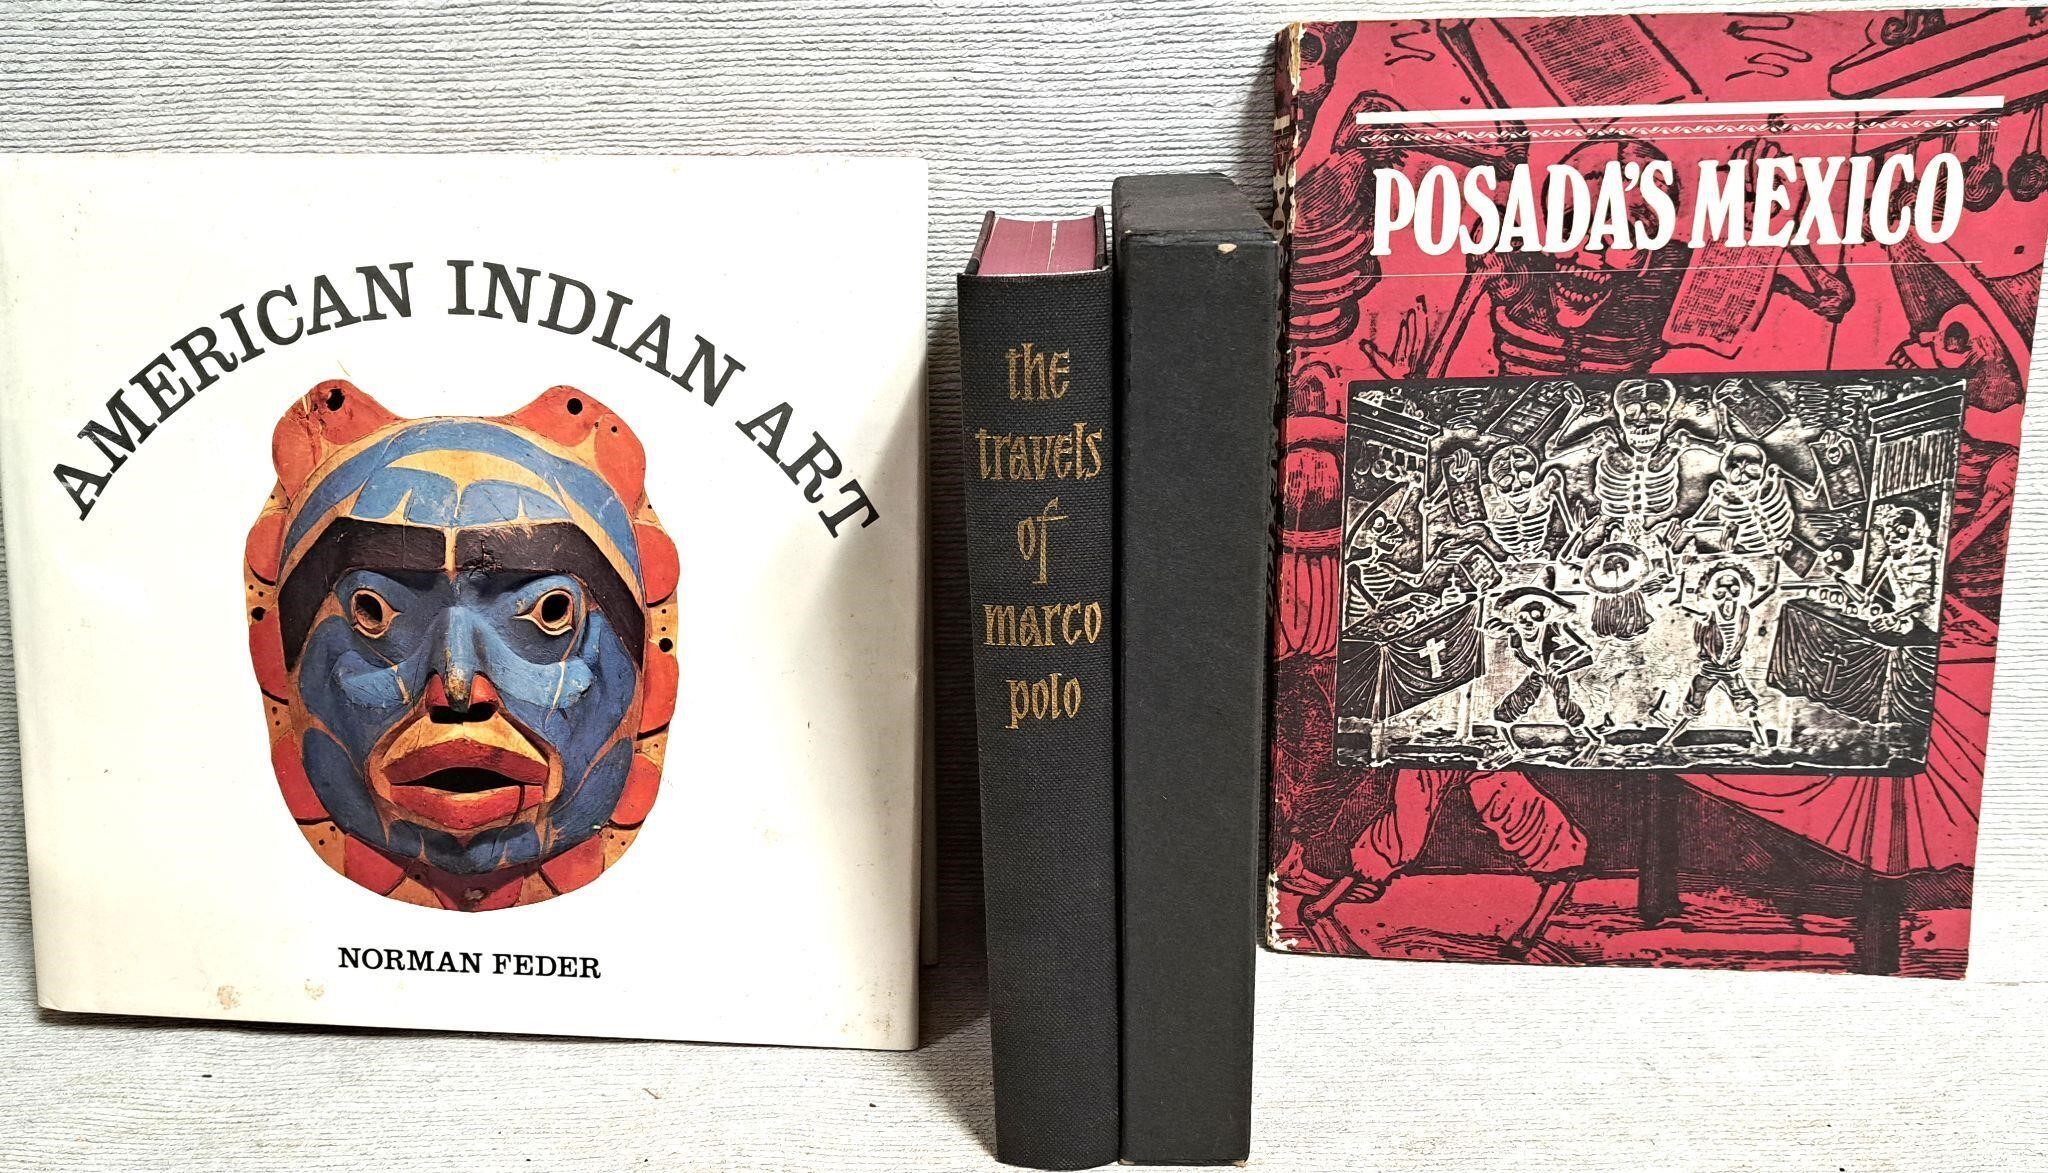 MARCO POLO BOOK AMERICAN INDIAN & POSADA'S MEXICO